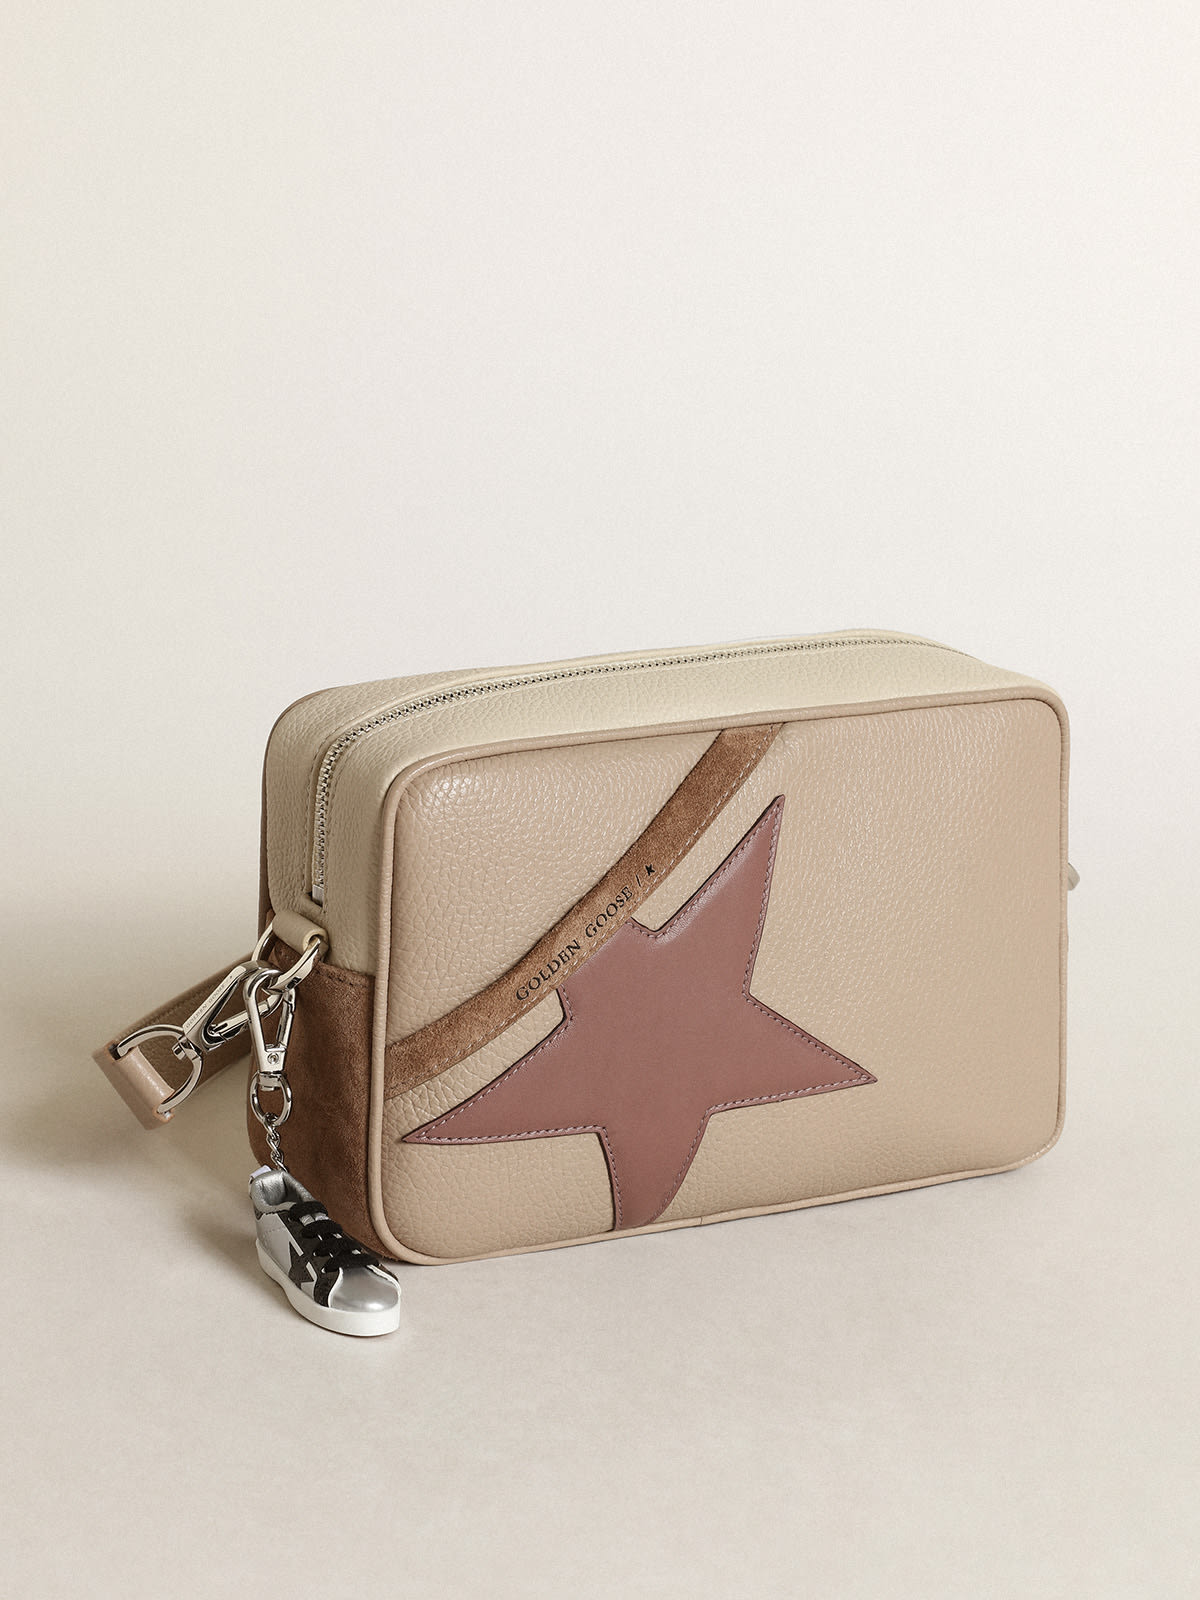 Golden Goose - Borsa Star Bag large in pelle martellata color bianco sporco e suede color cappuccino con stella in pelle viola in 